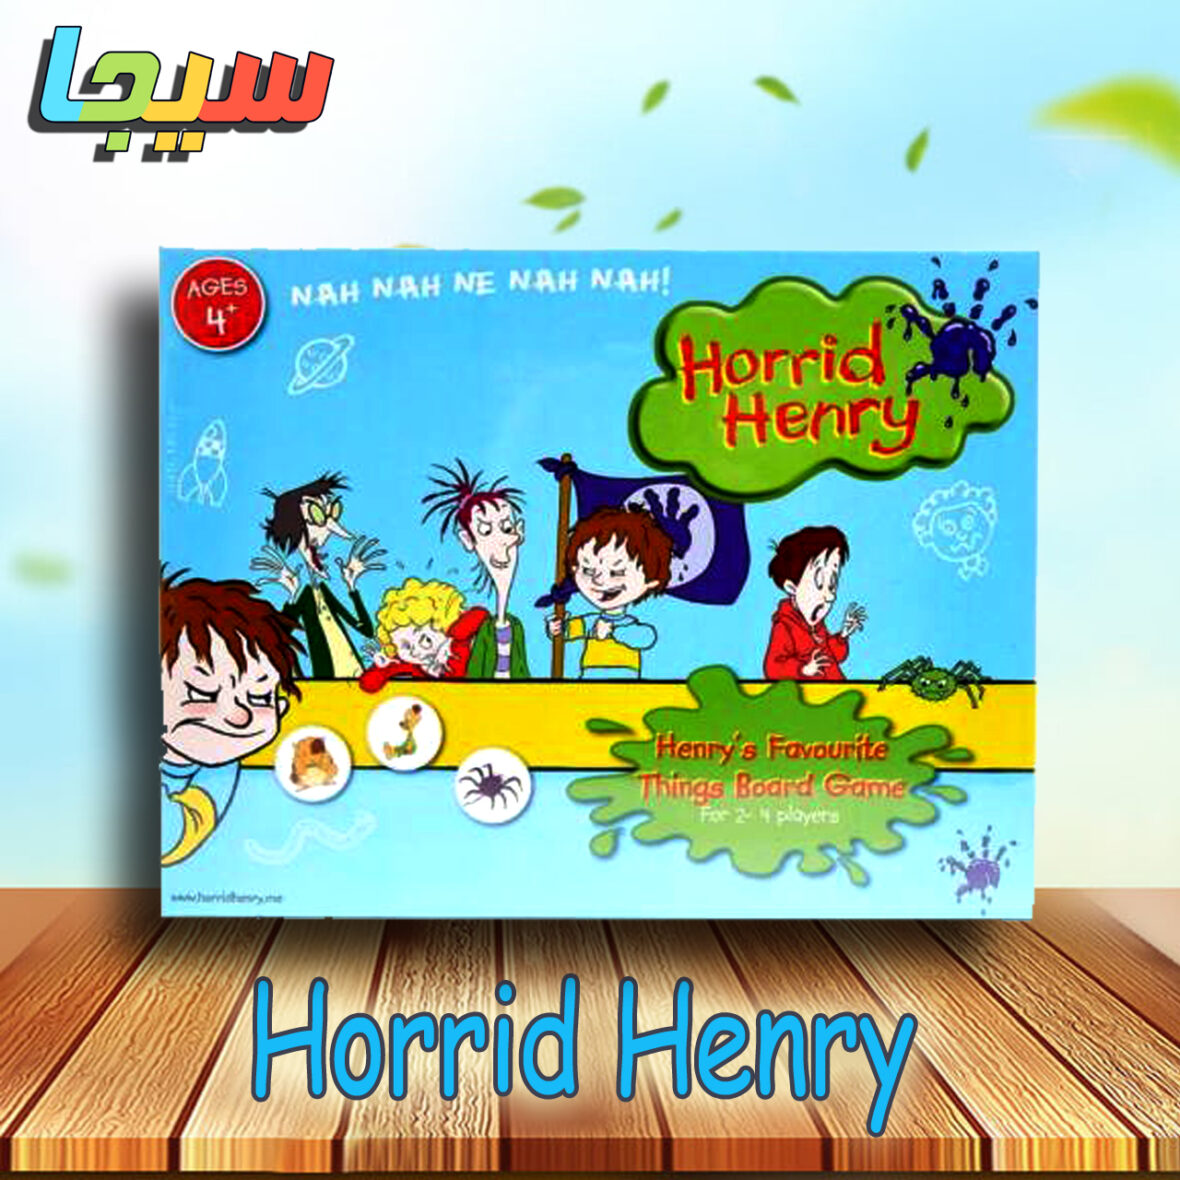 HORRID HENRY